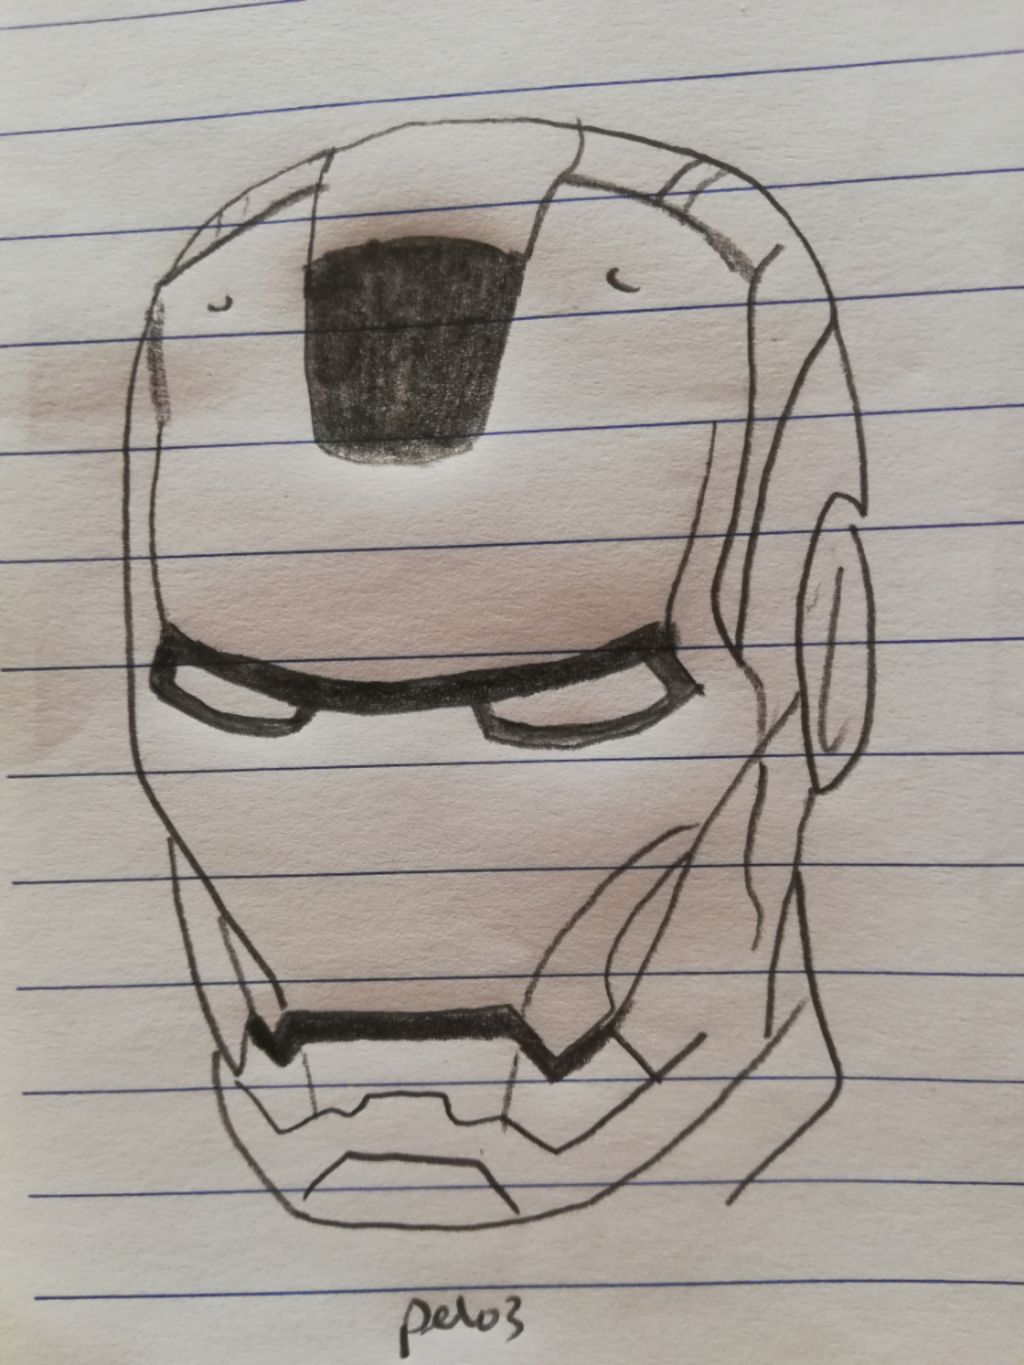 Hình vẽ Iron Man sẽ khiến bạn say lòng vì độ chi tiết tuyệt vời và màu sắc sống động. Hãy tưởng tượng bức hình đó chất chứa sức mạnh của Iron Man, siêu anh hùng giác đấu, tạo ra những vũ khí hủy diệt tối tân.